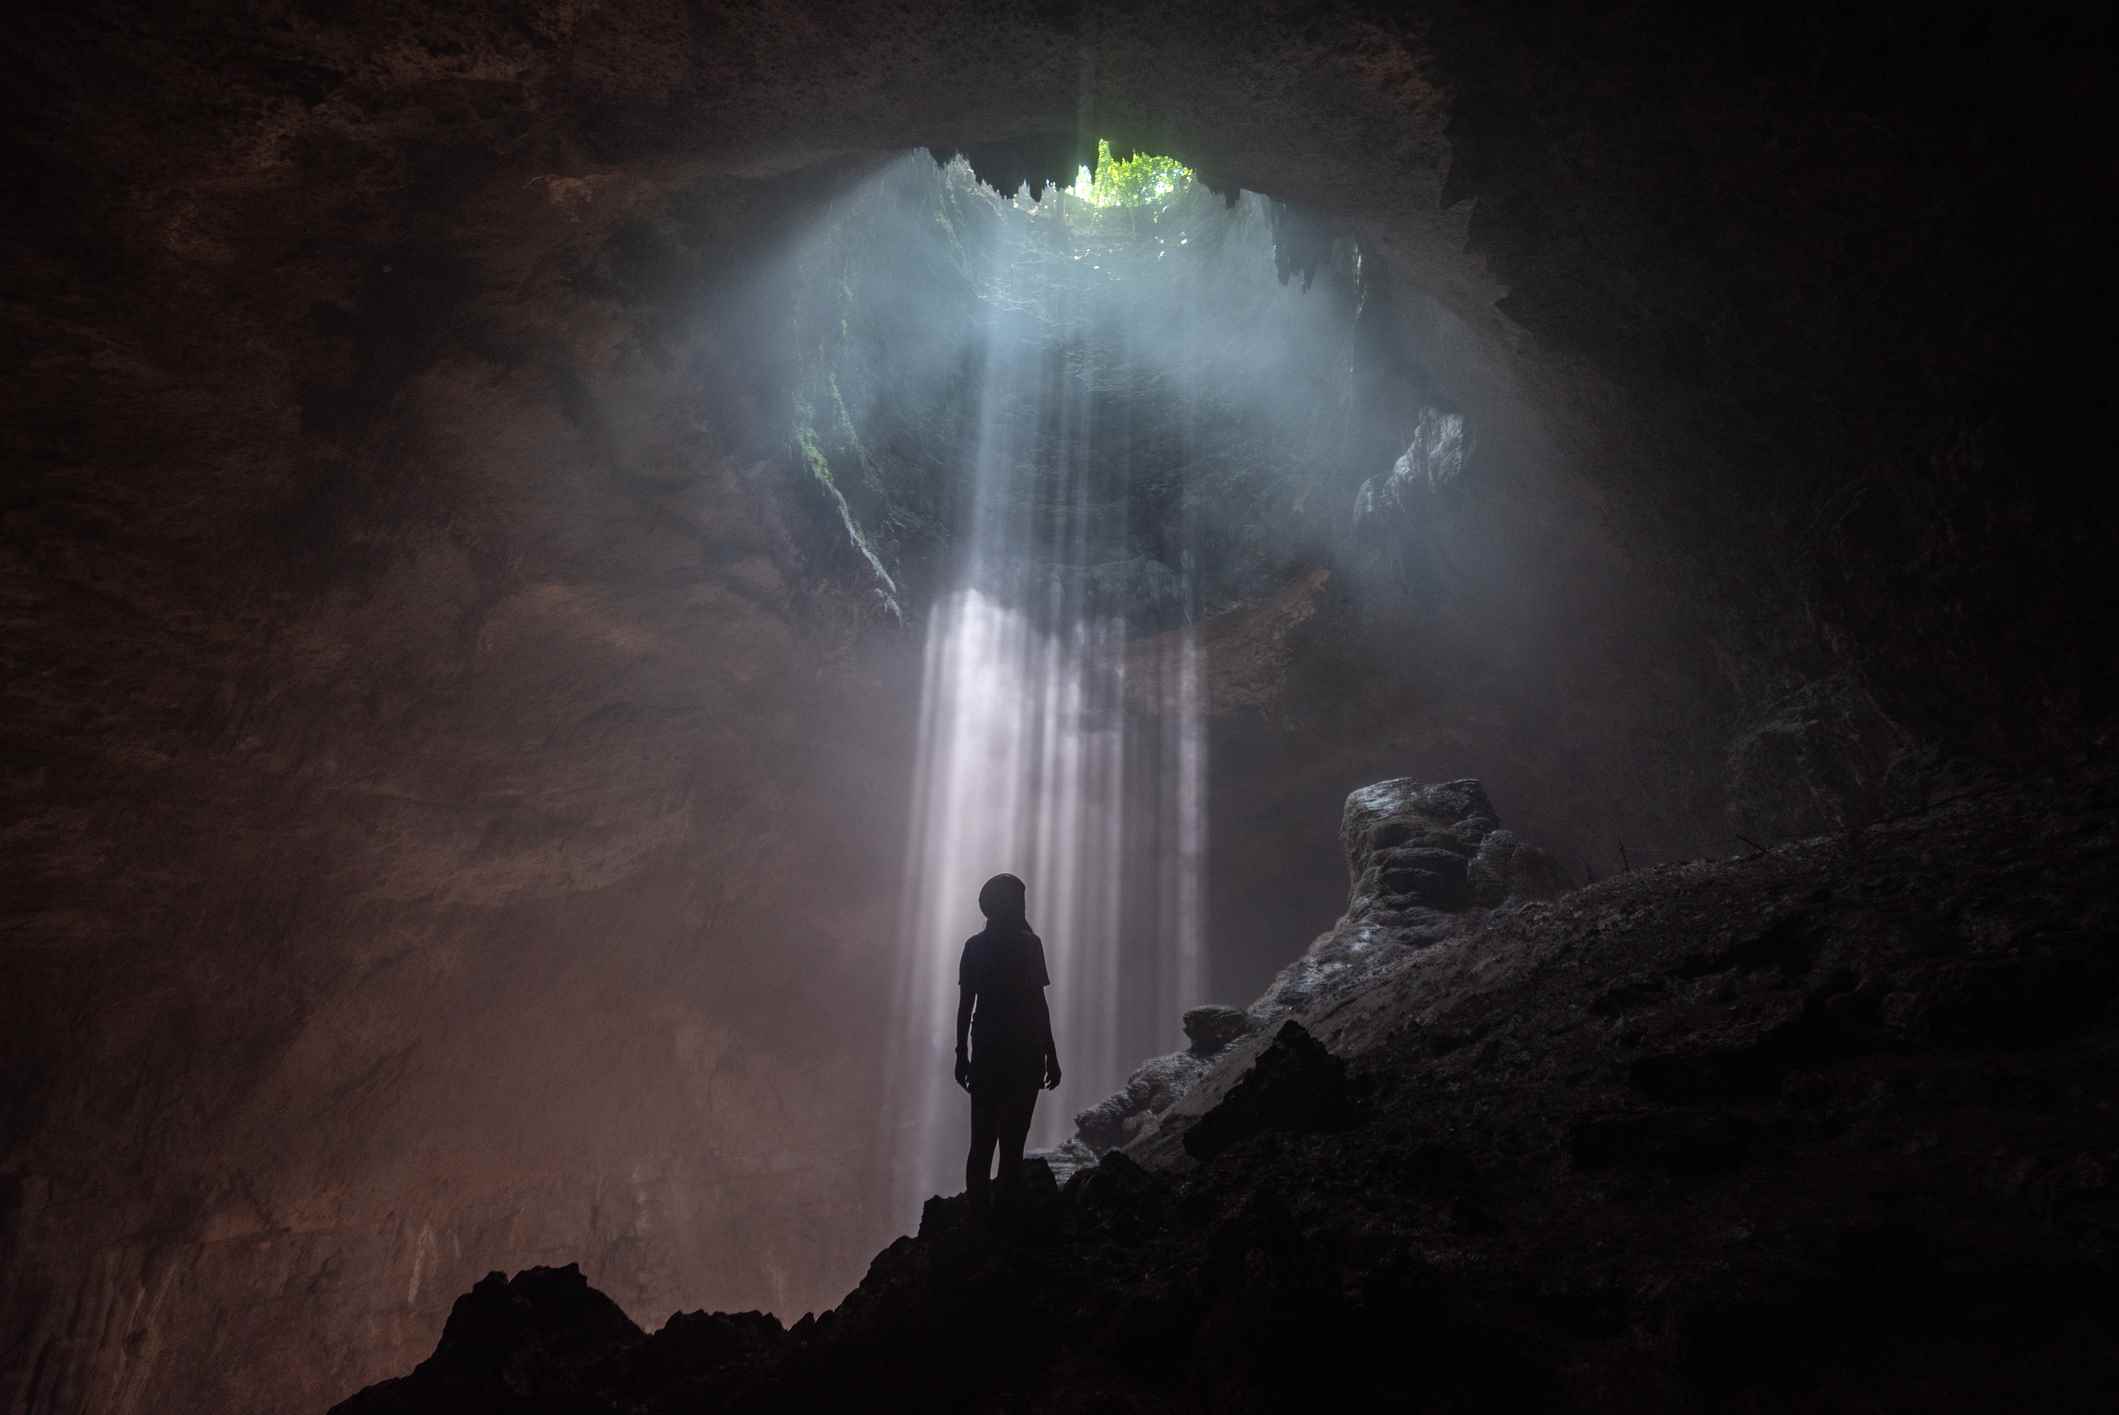 Jomblang Mağarası'ndaki açılışa bakan kadın